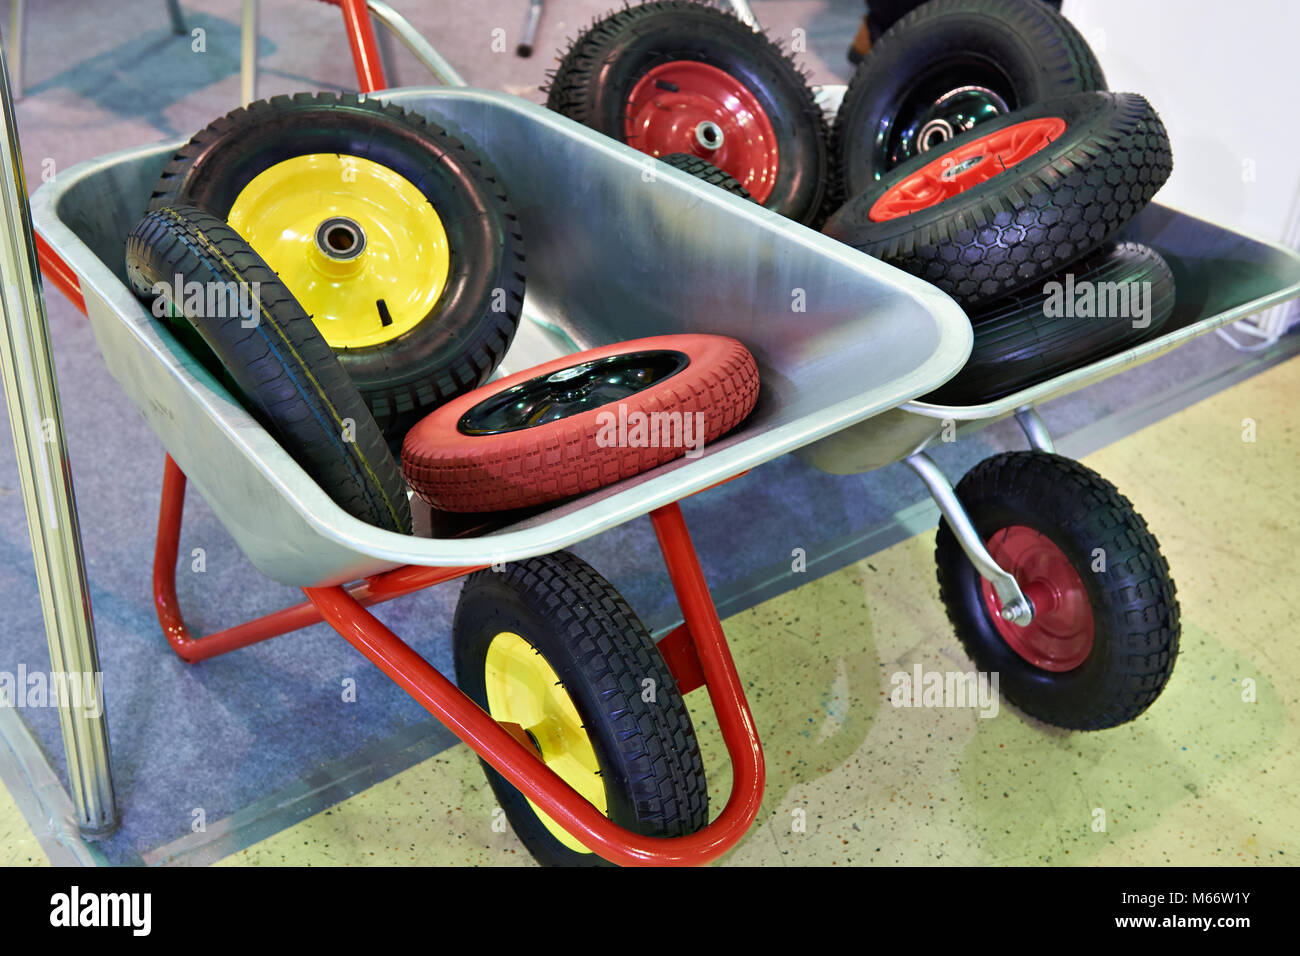 Garden wheelbarrows with spare wheels in the shop Stock Photo